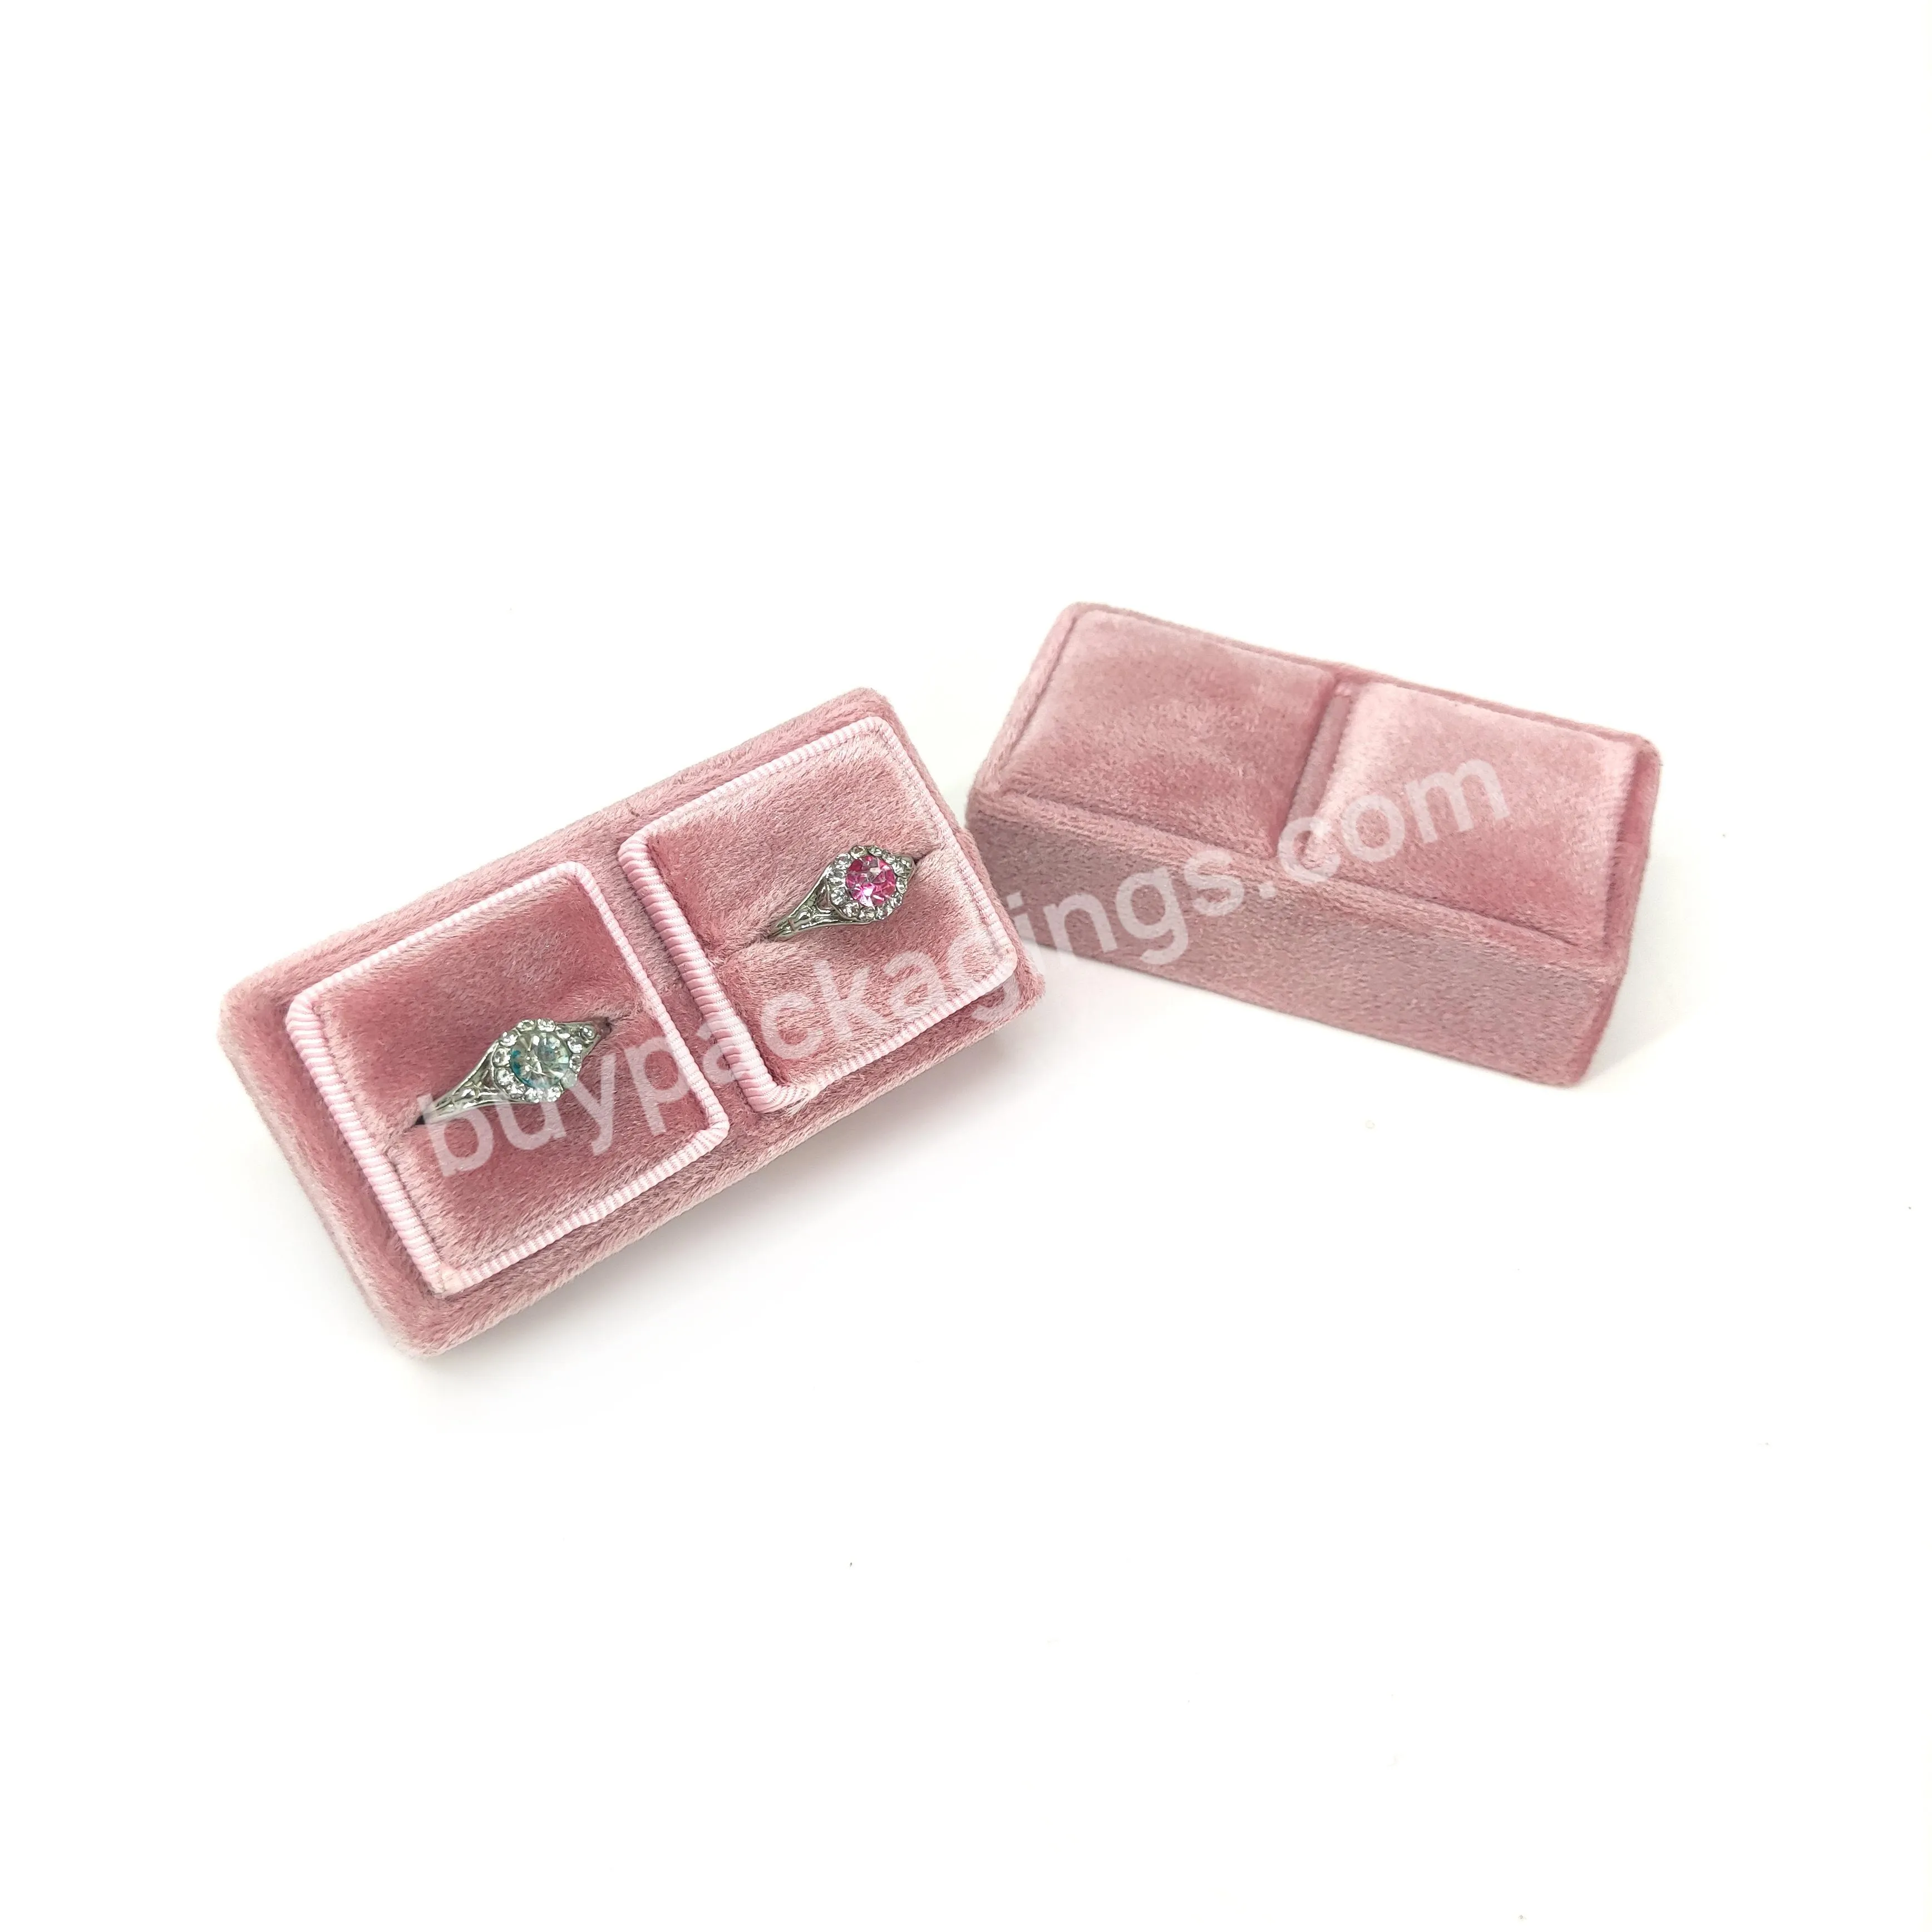 2020 new lovely pink velvet ring box Velvet jewel box proposal ring box factory stock can be customized LOGO